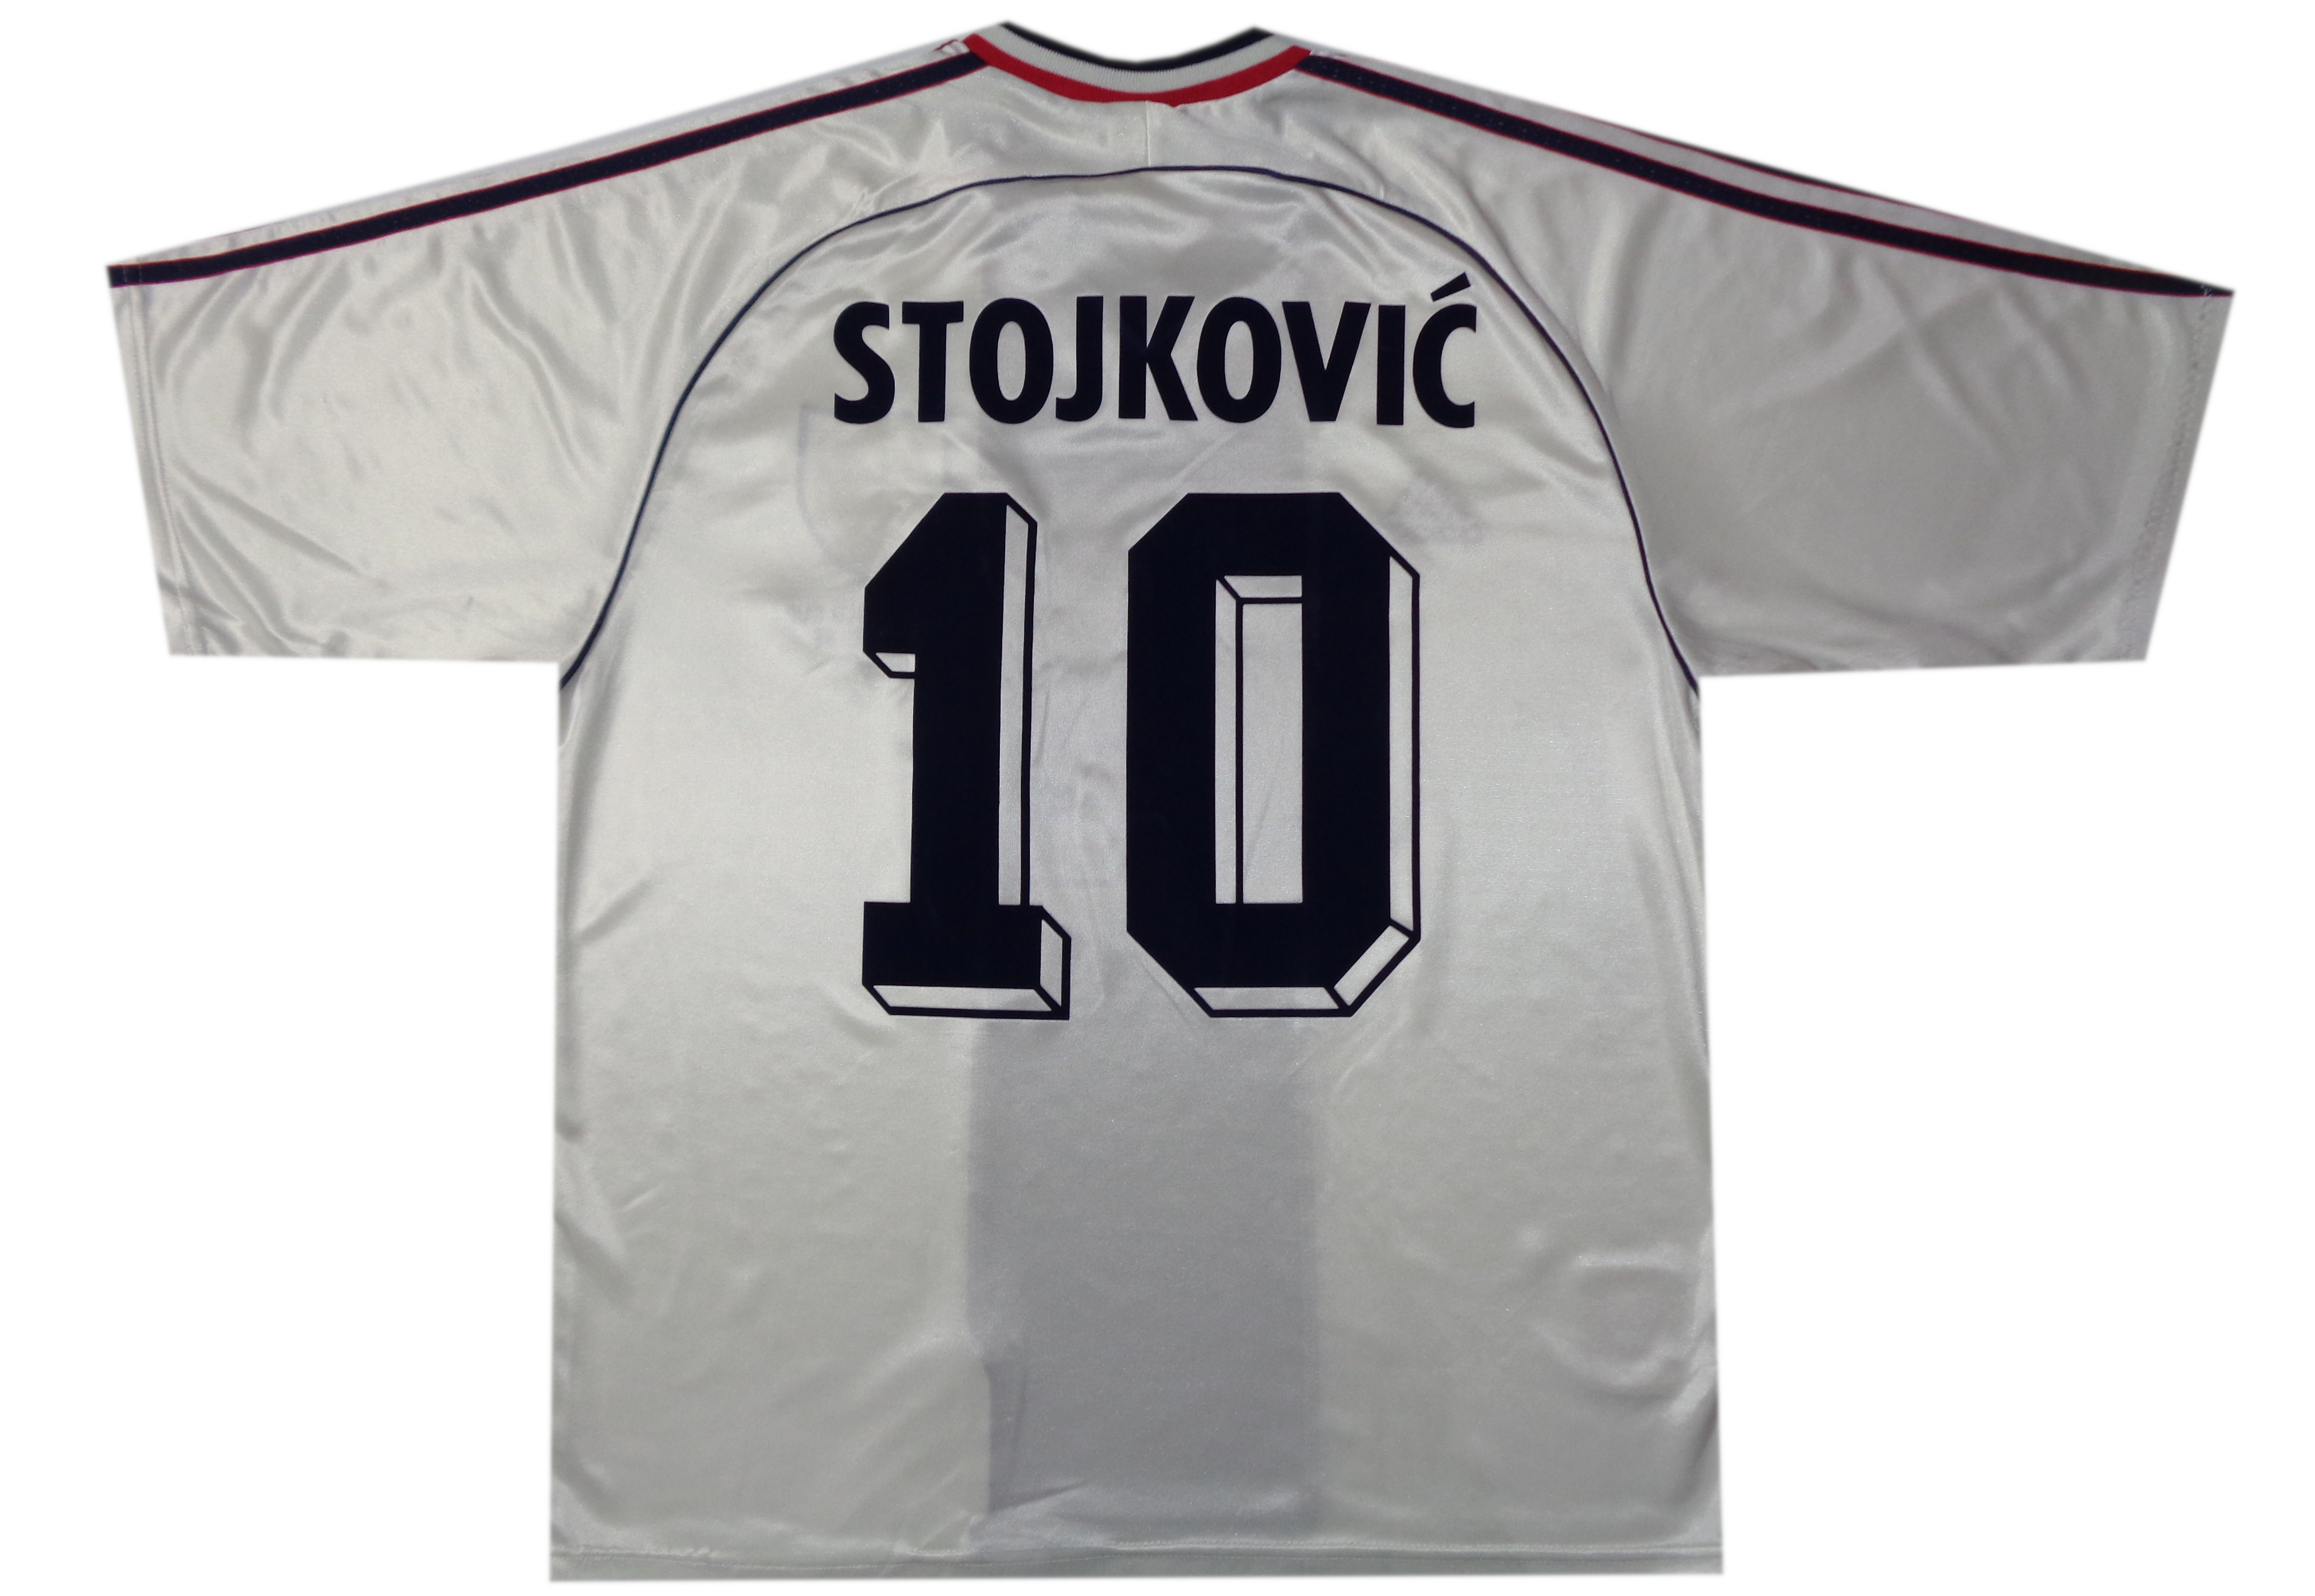 STOJKOVIC #10 - YUGOSLAVIA 1998 WORLD UP AWAY SHIRT - ADIDAS - SIZE LARGE